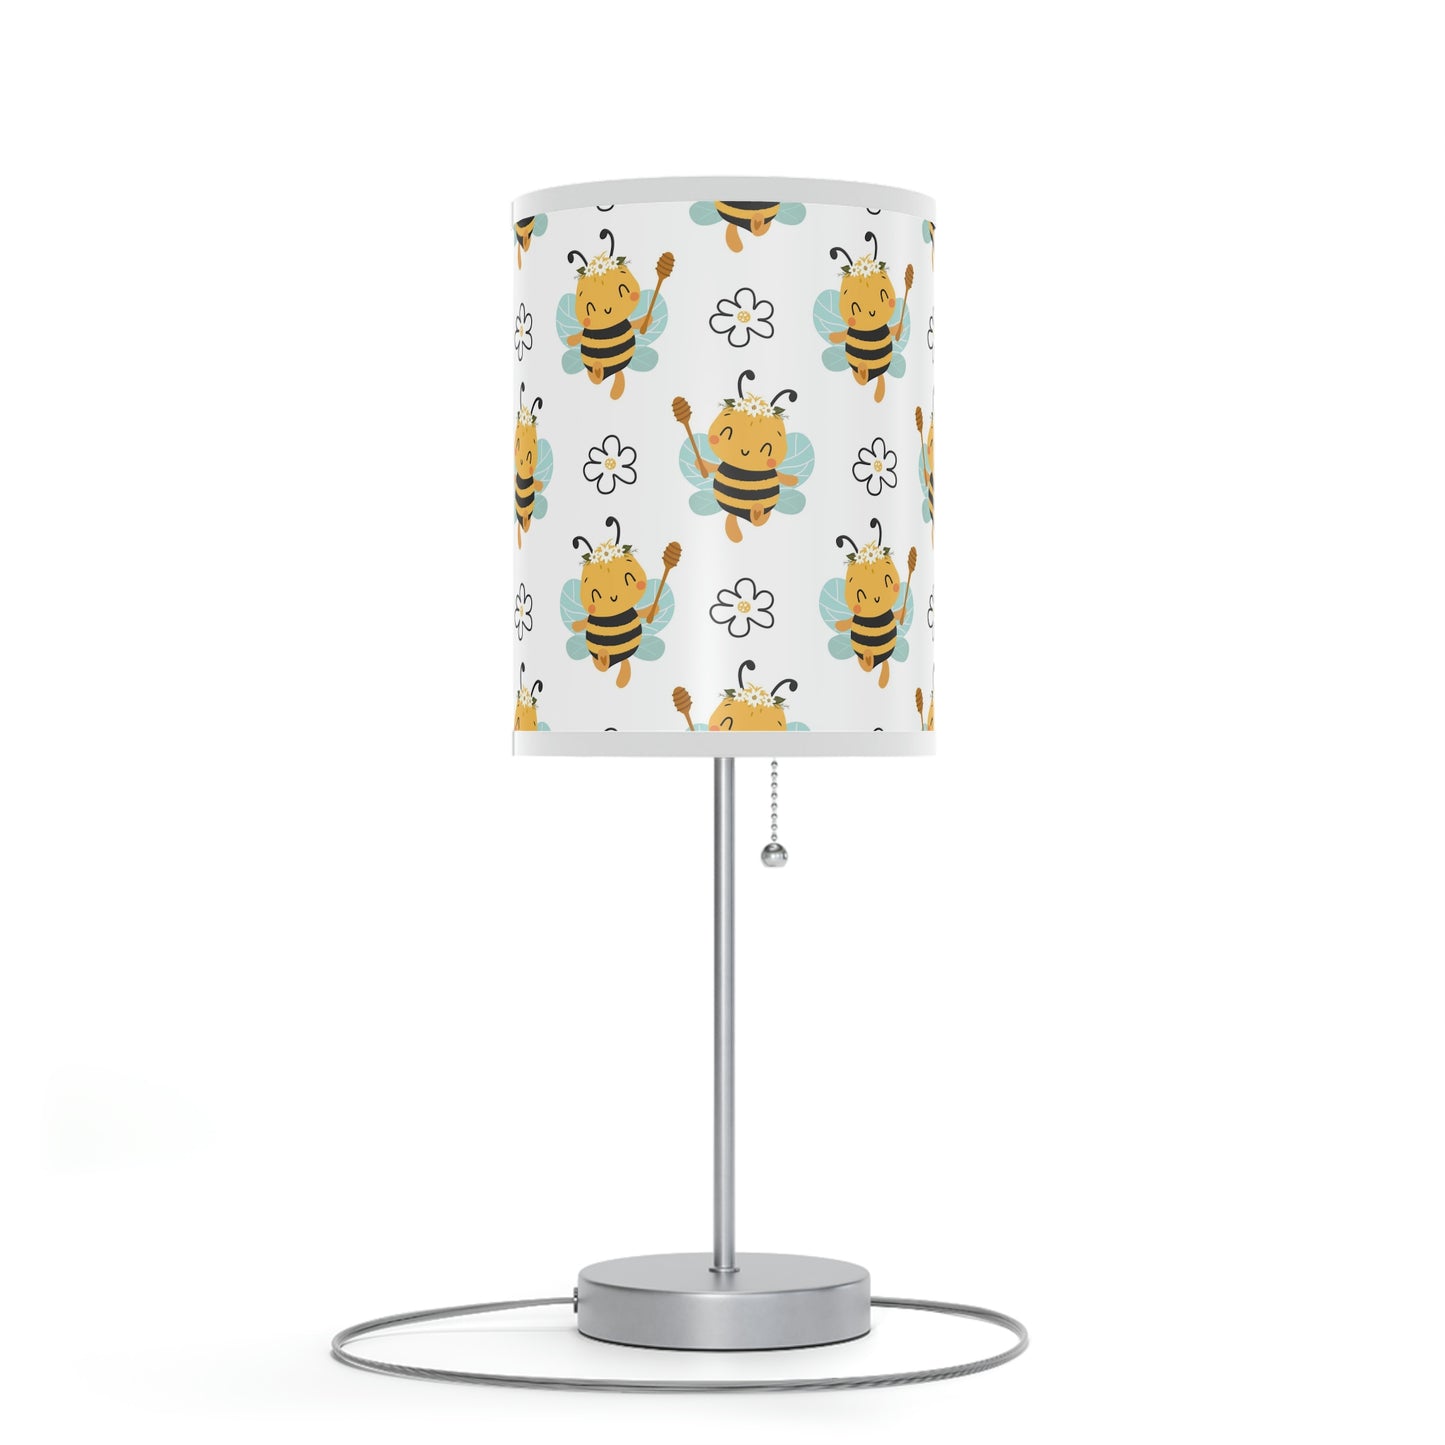 Adorable Honeybee Baby Nursery Lamp - Honeybee Nursery Table Lamp